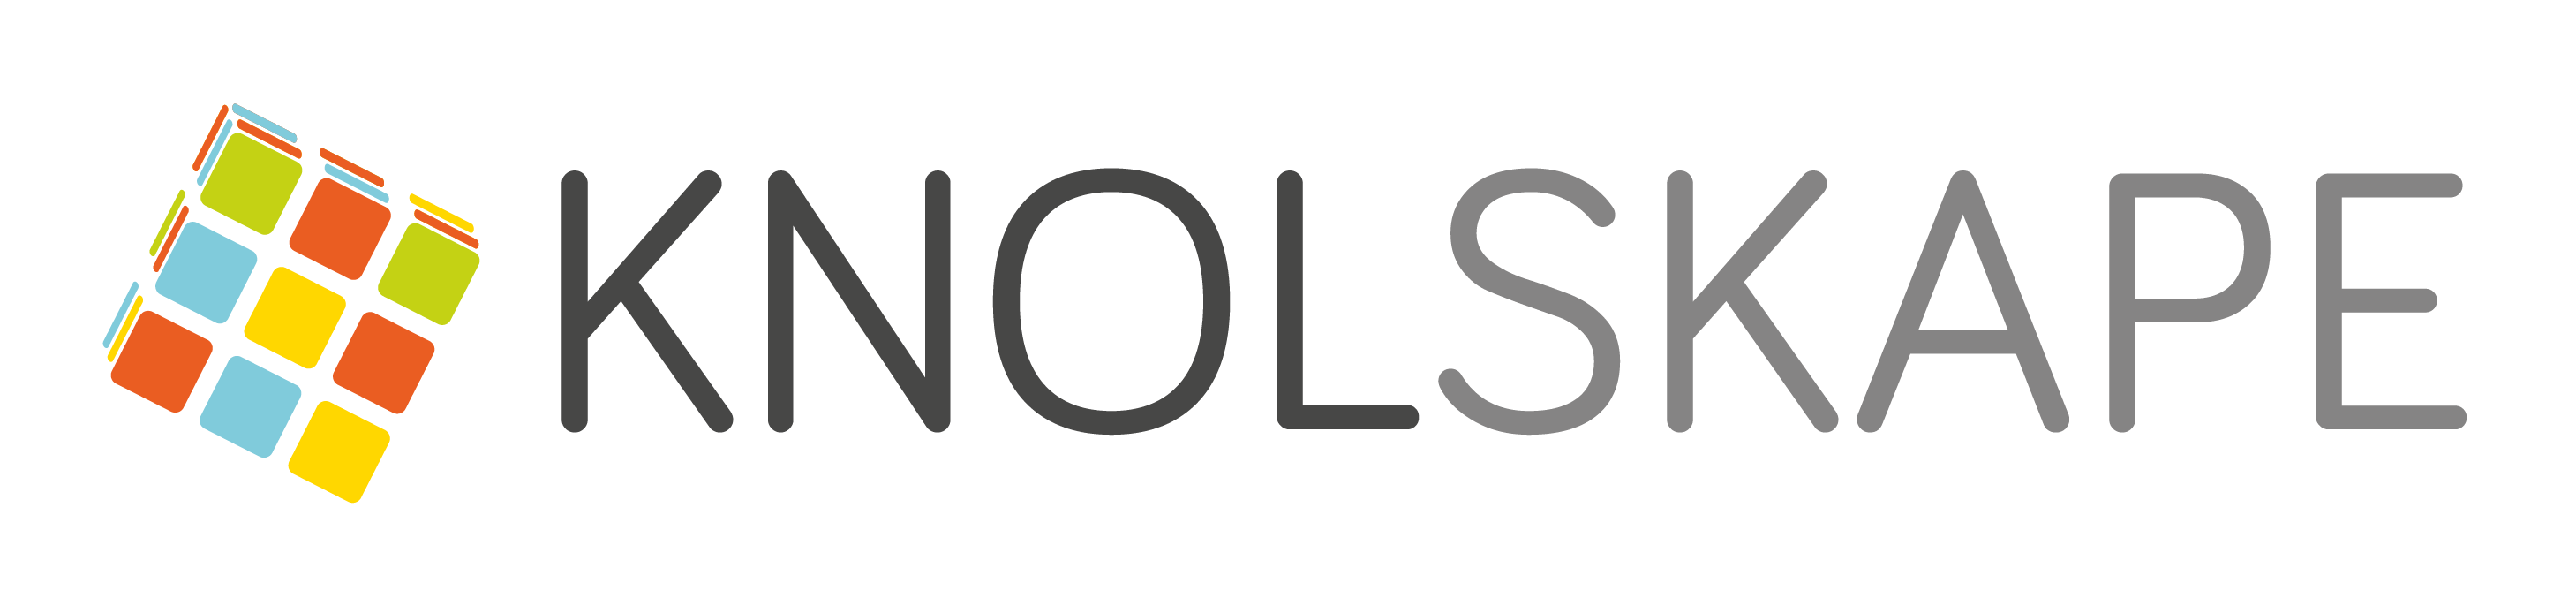 knolskape-logo